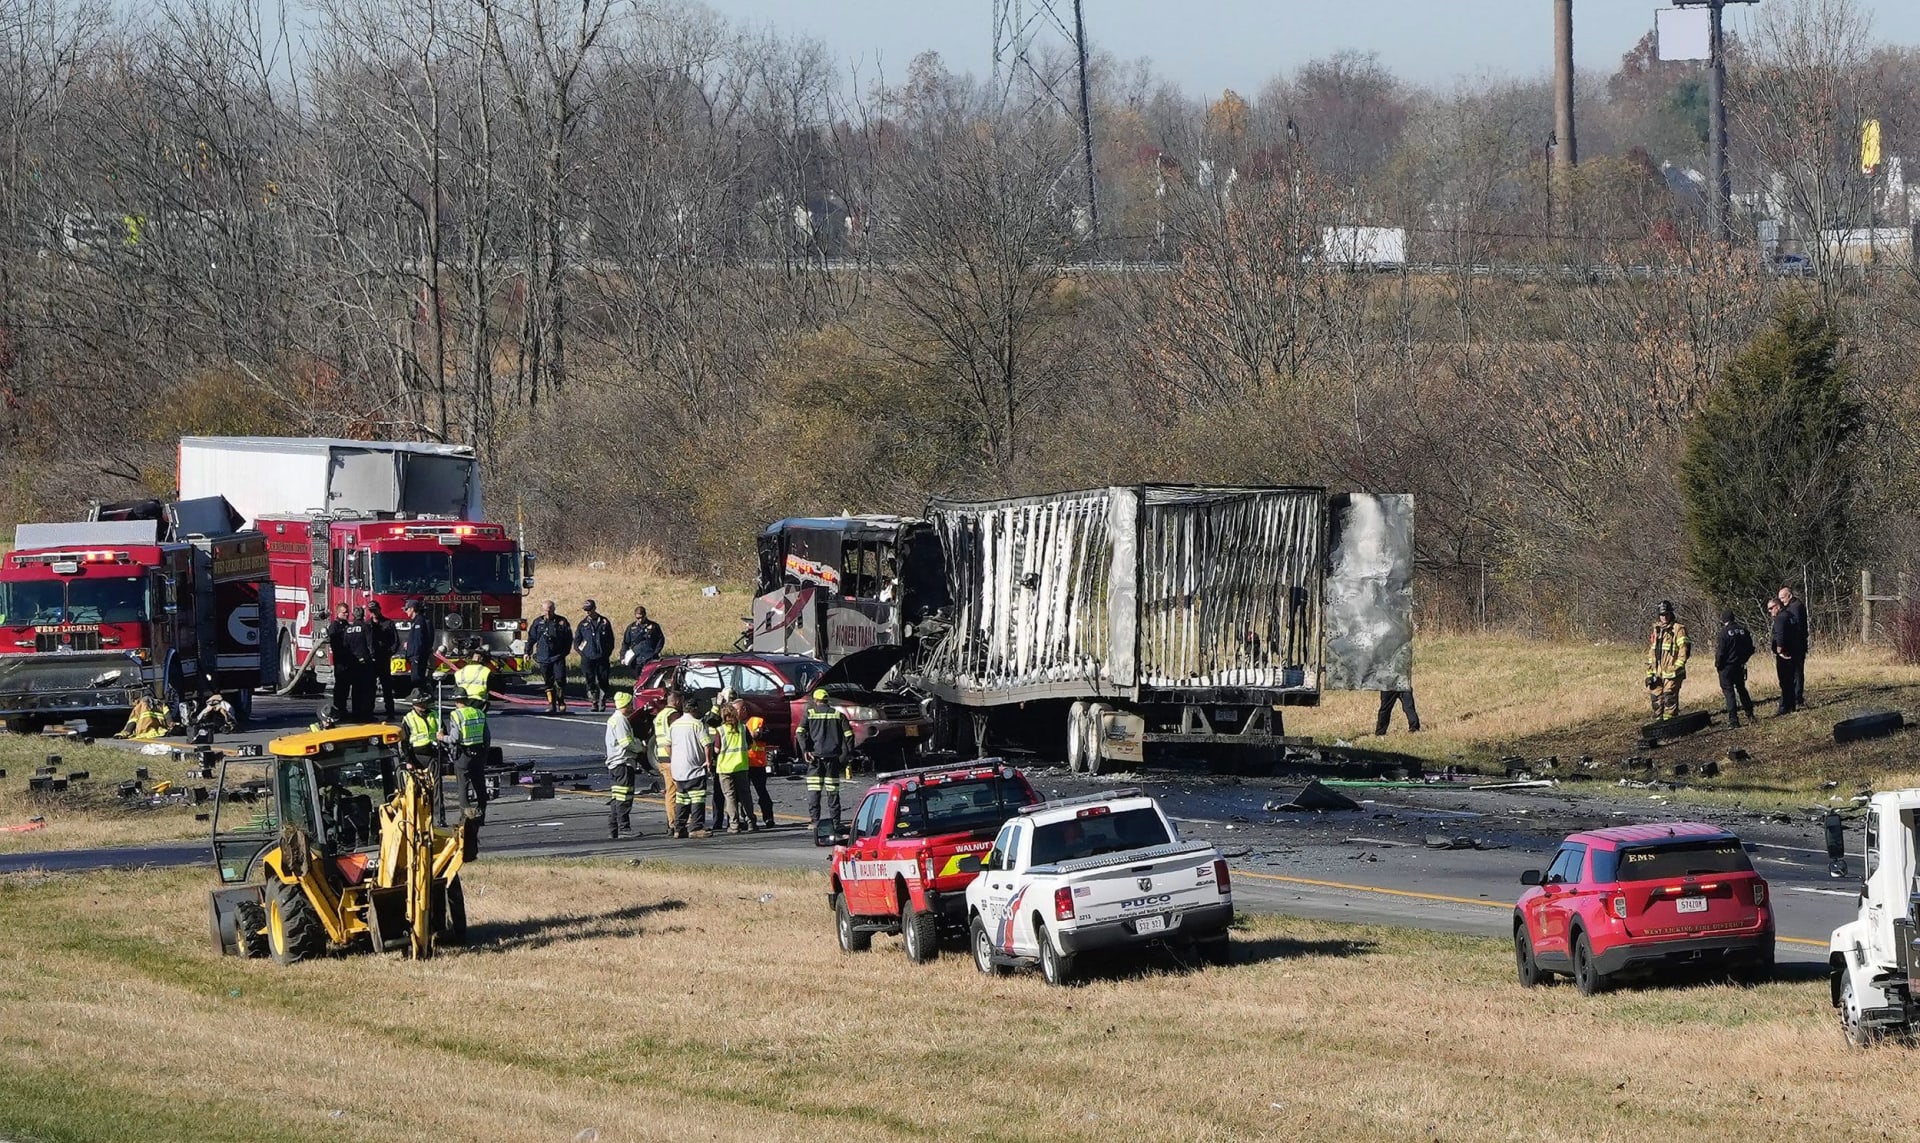 Nehoda na dálnici v Ohiu si vyžádala šest životů.